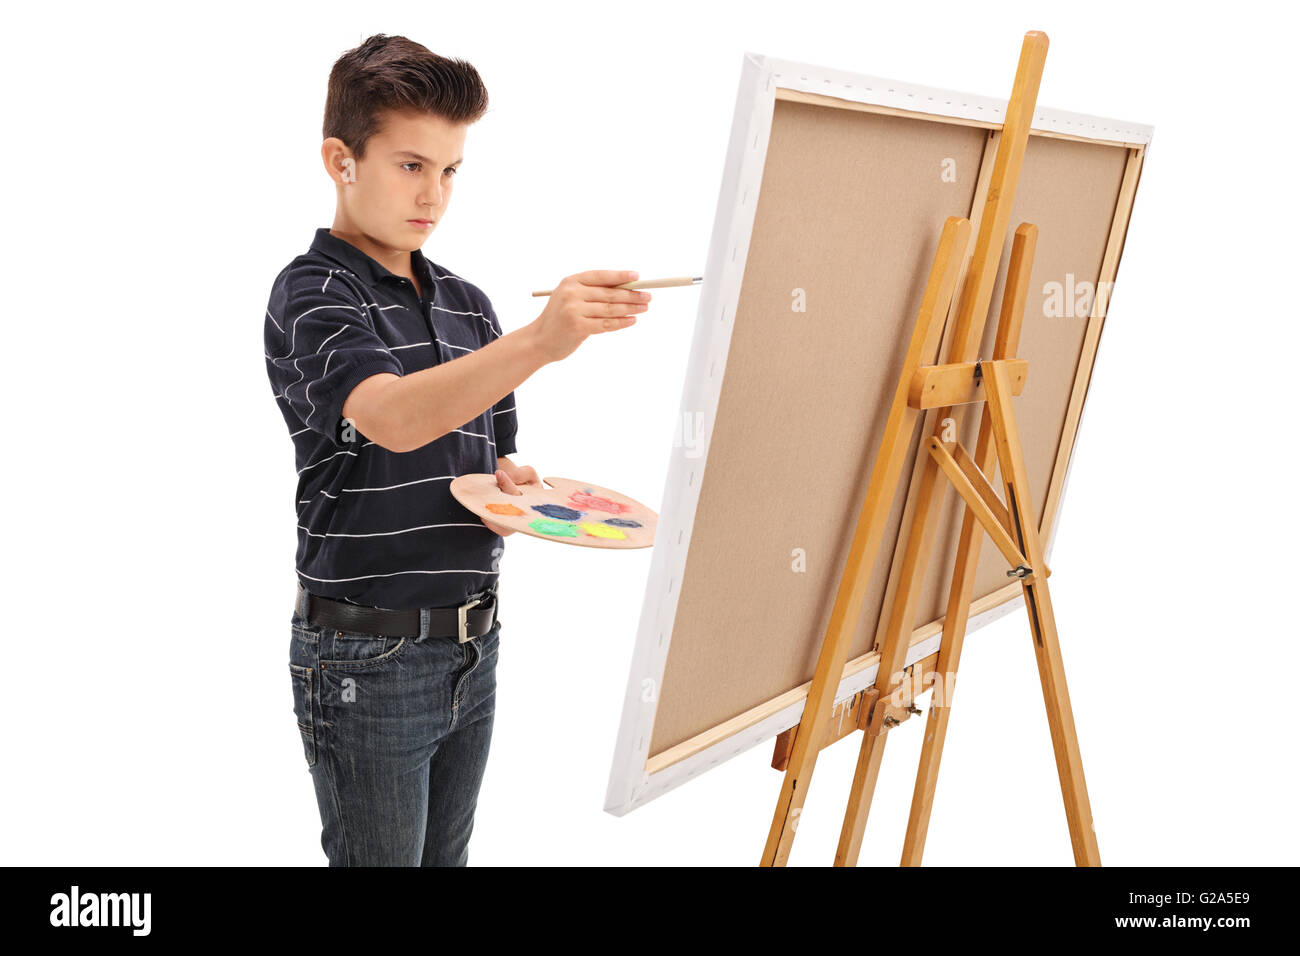 Kleines Kind malen auf einer Leinwand mit einem Pinsel isoliert auf weißem Hintergrund Stockfoto